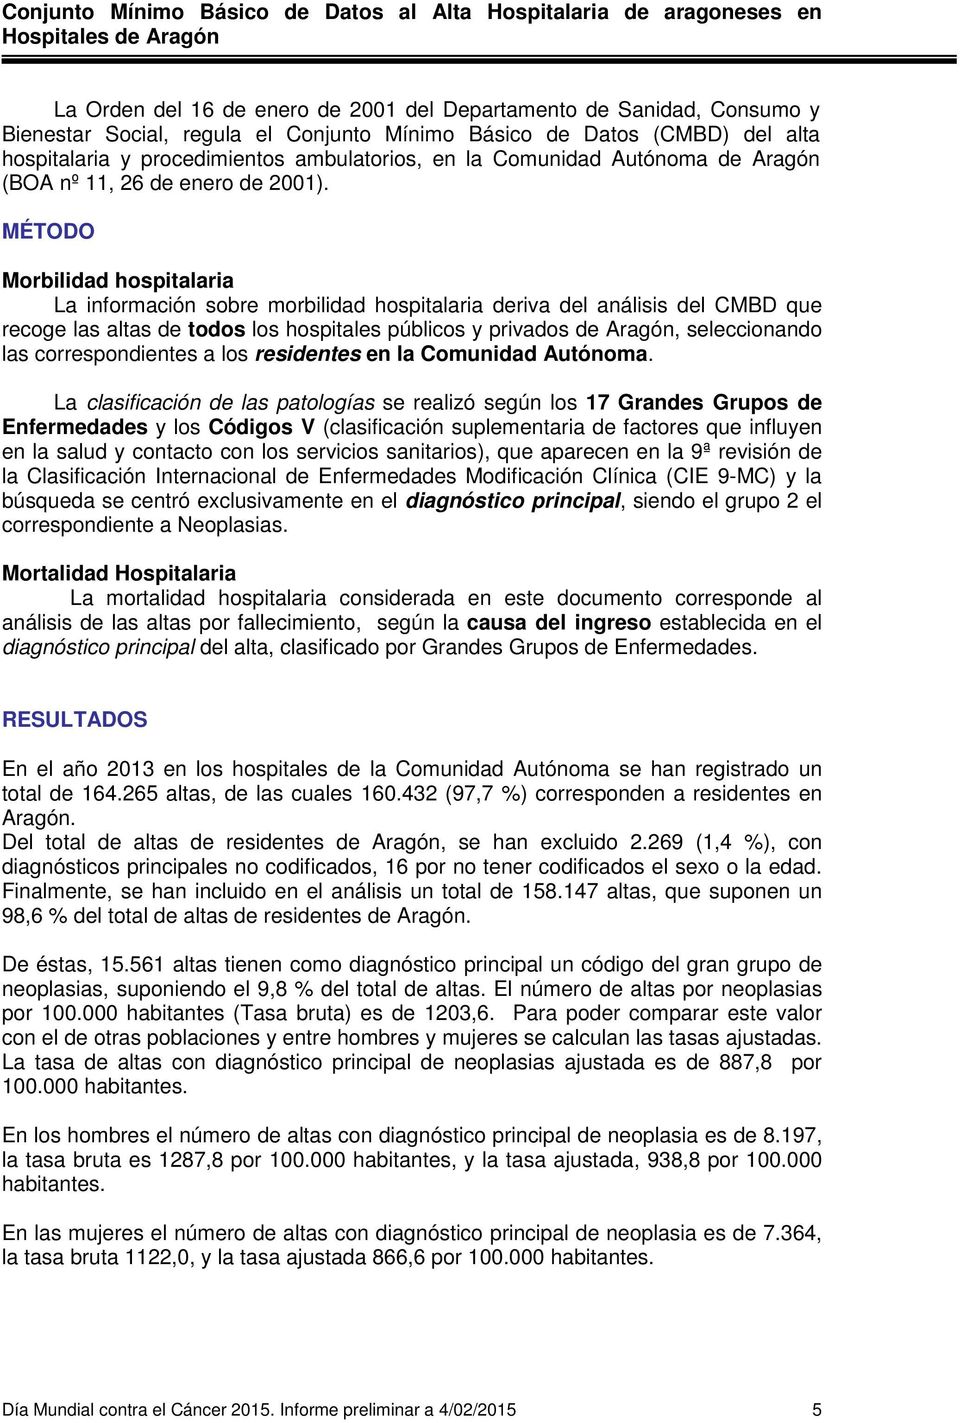 MÉTODO Morbilidad hospitalaria La información sobre morbilidad hospitalaria deriva del análisis del CMBD que recoge las altas de todos los hospitales públicos y privados de Aragón, seleccionando las